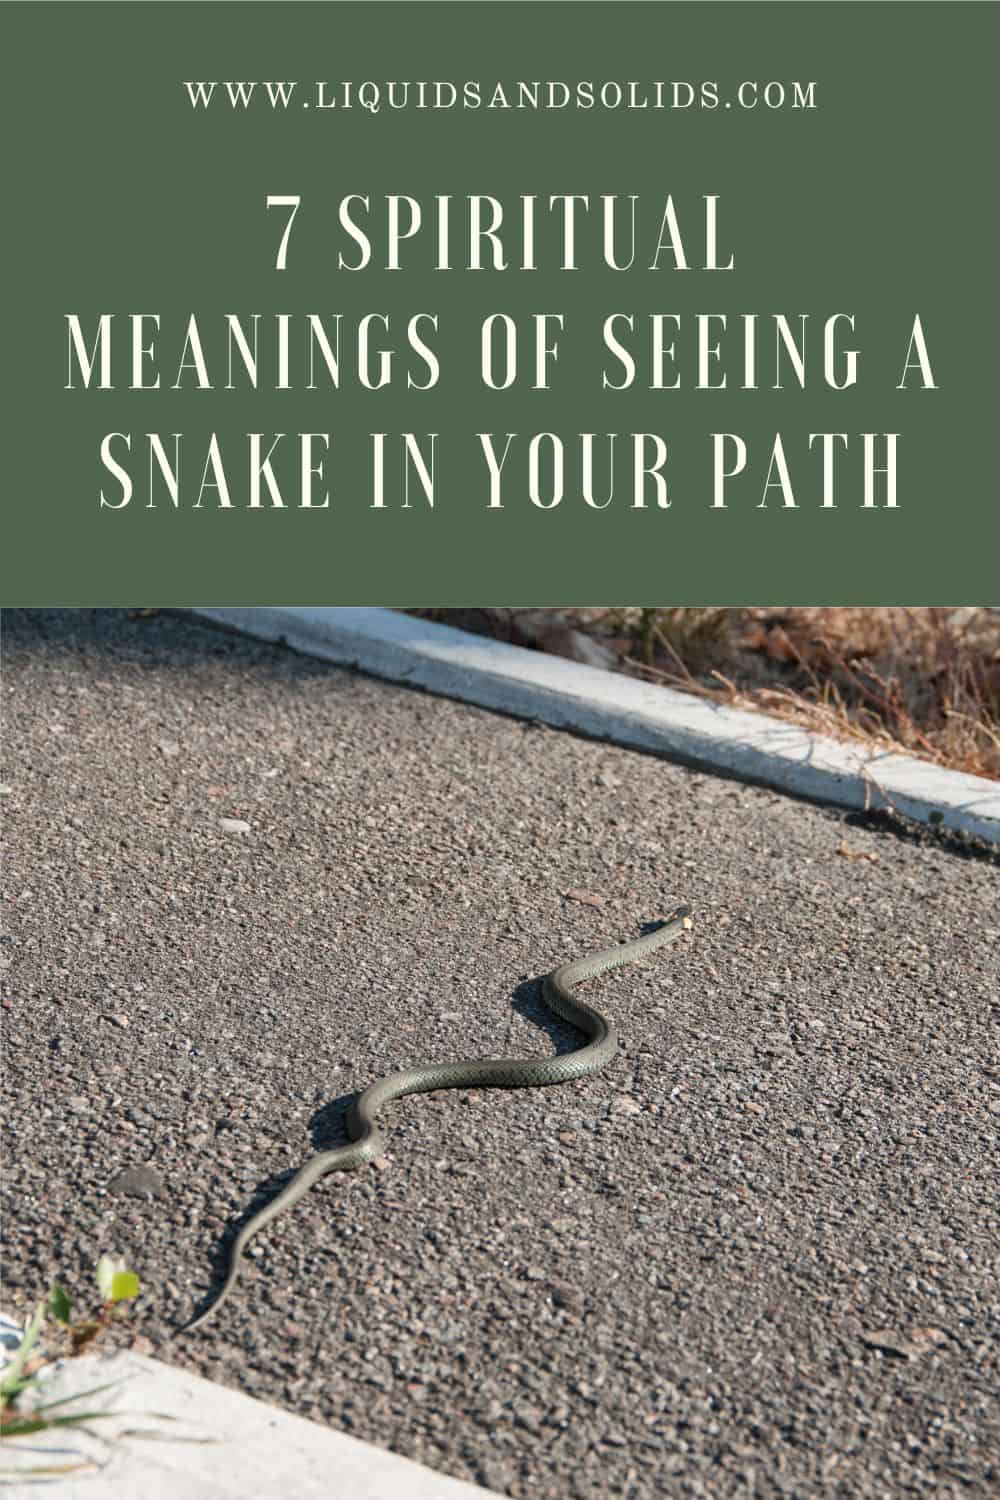  7 significations spirituelles de la présence d'un serpent sur votre chemin